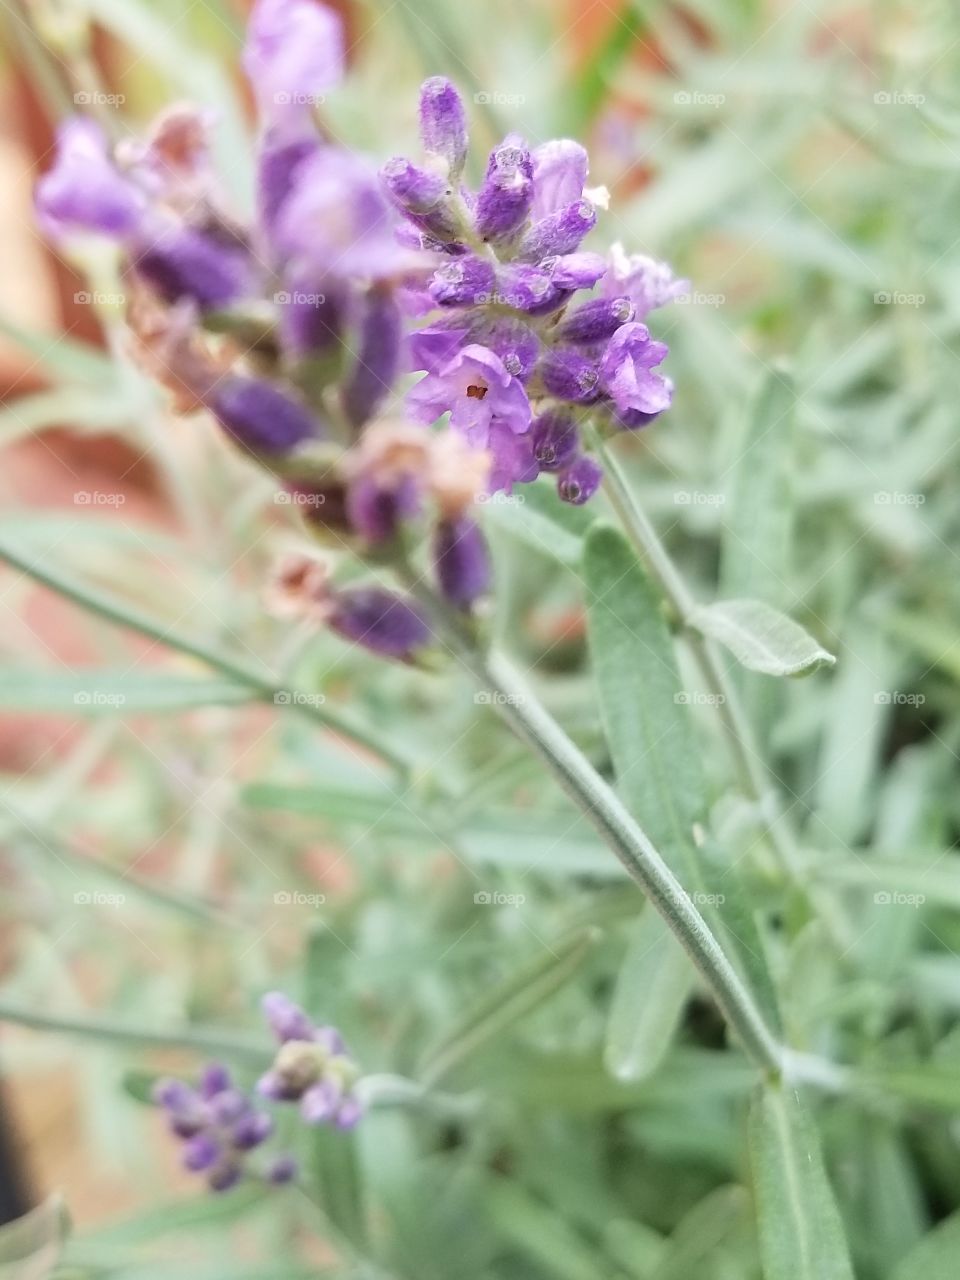 Lovely Lavender